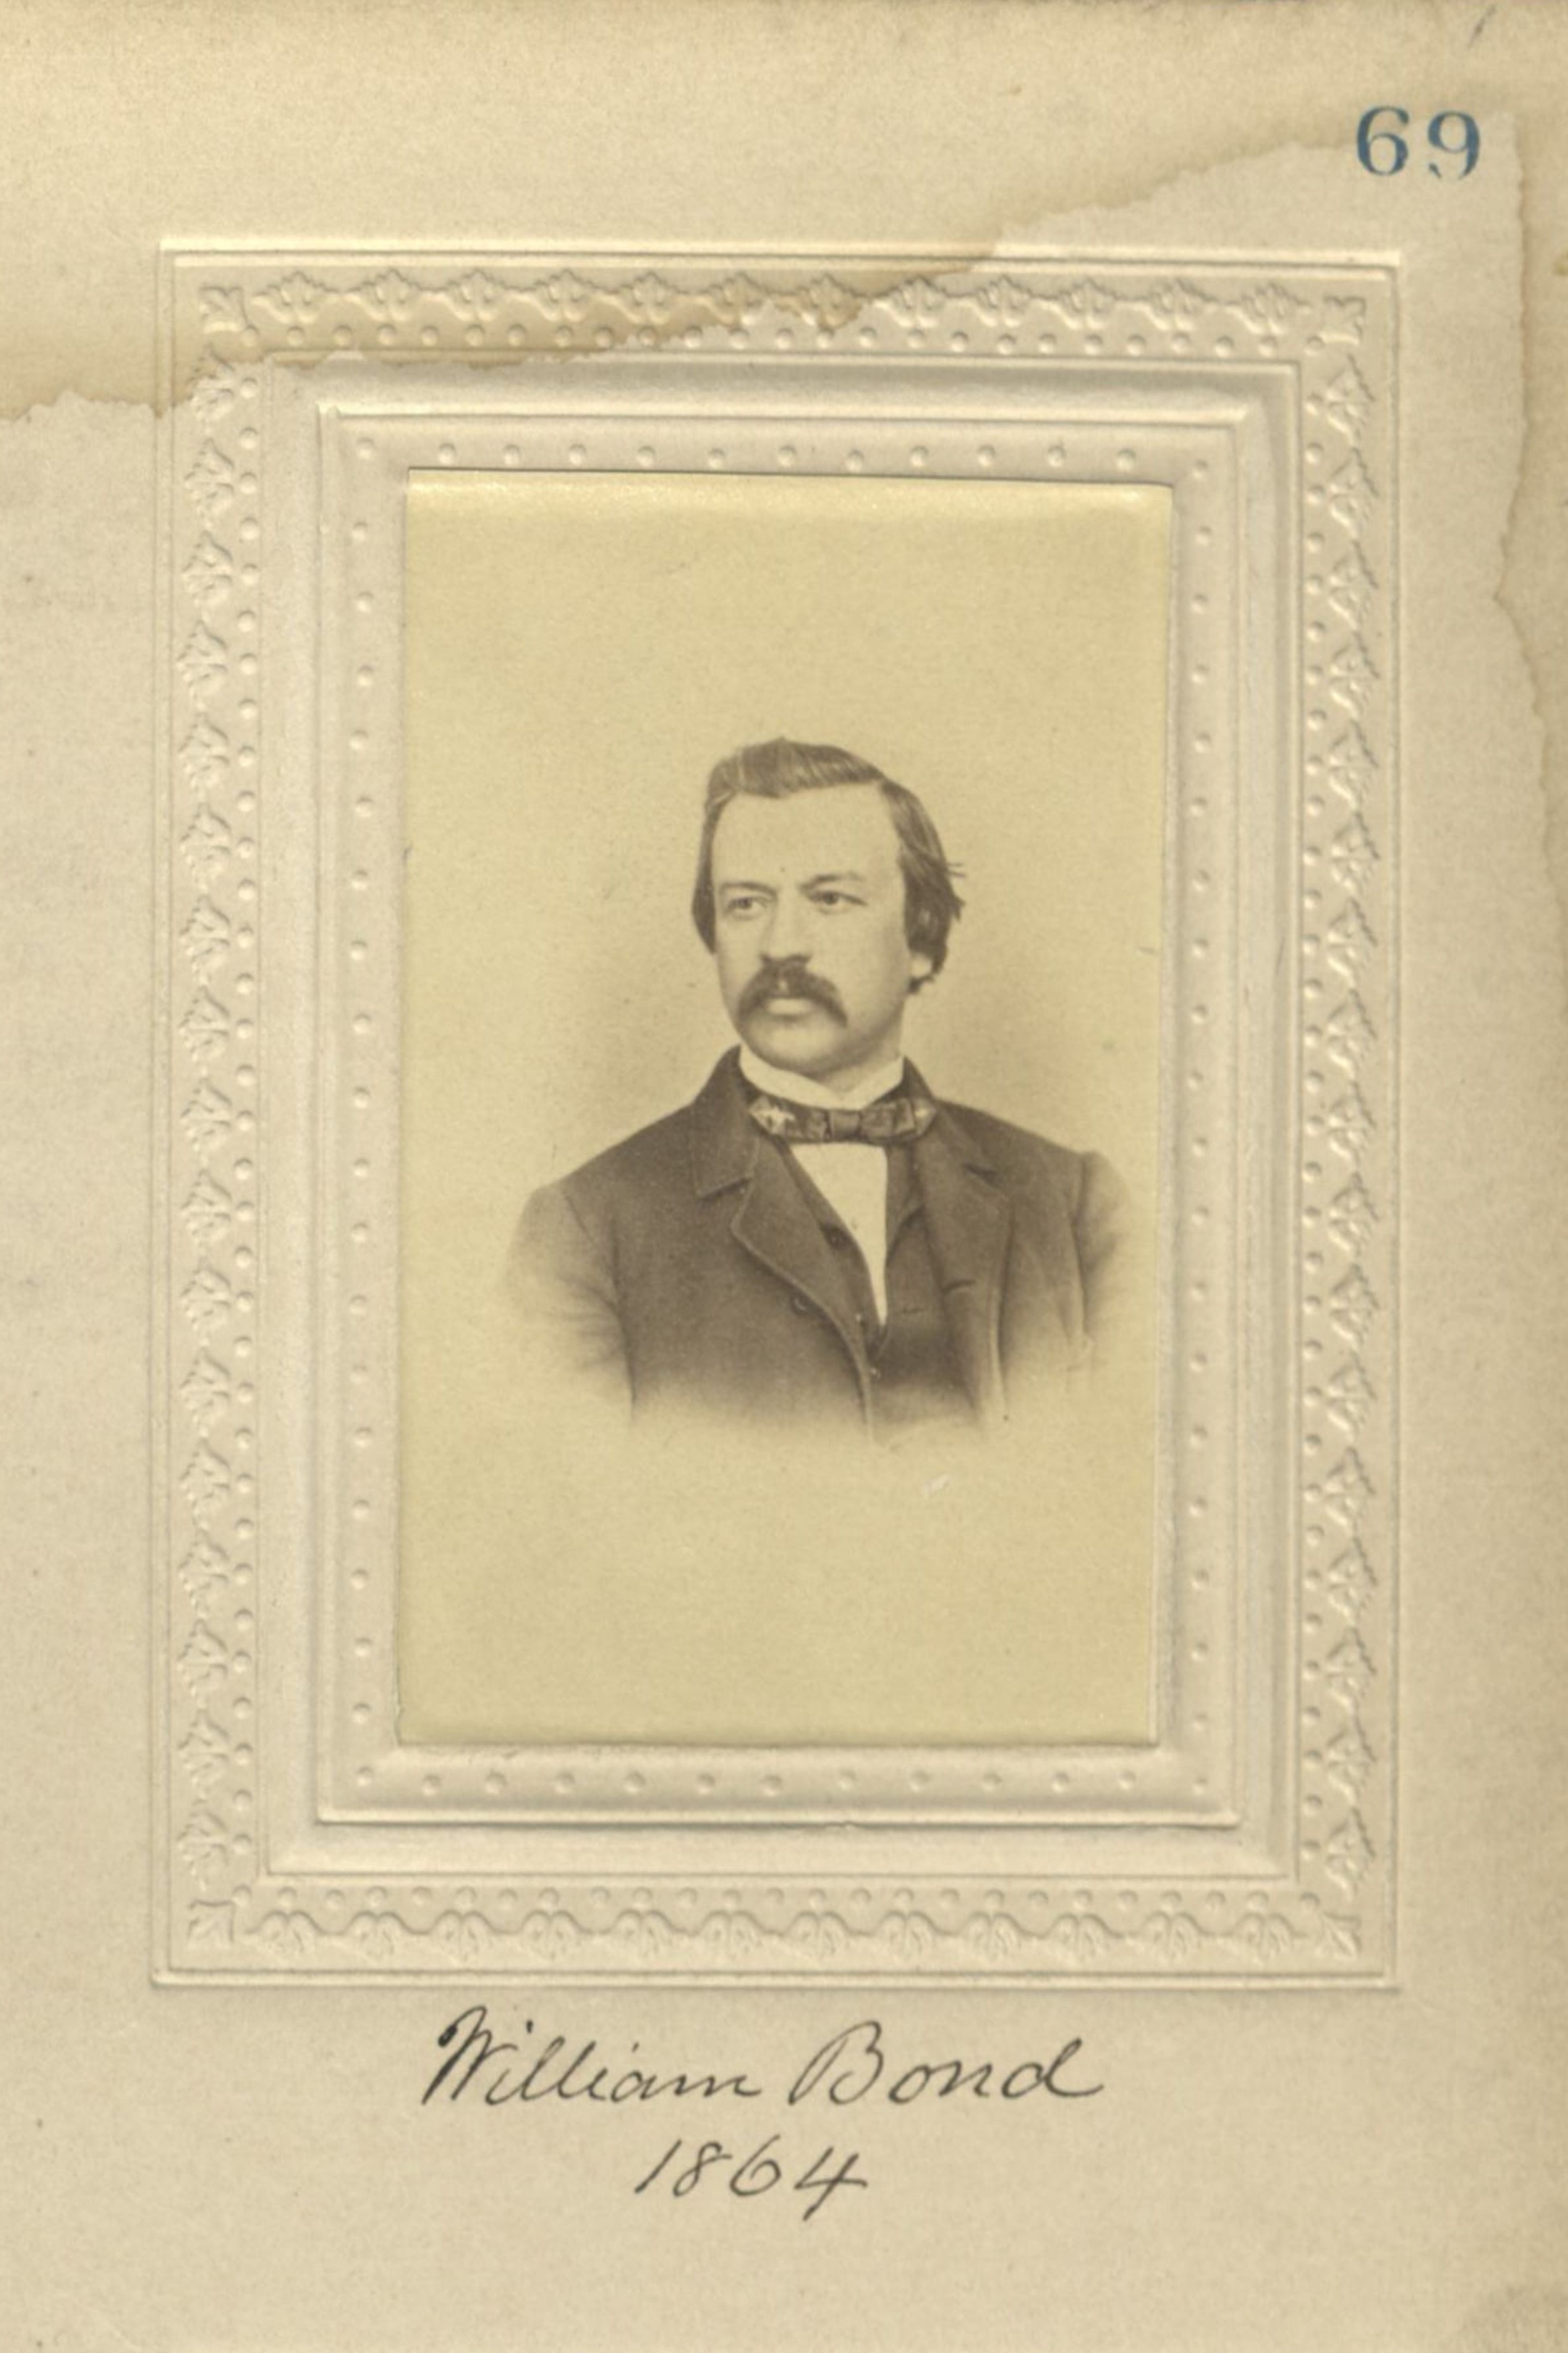 Member portrait of William Bond